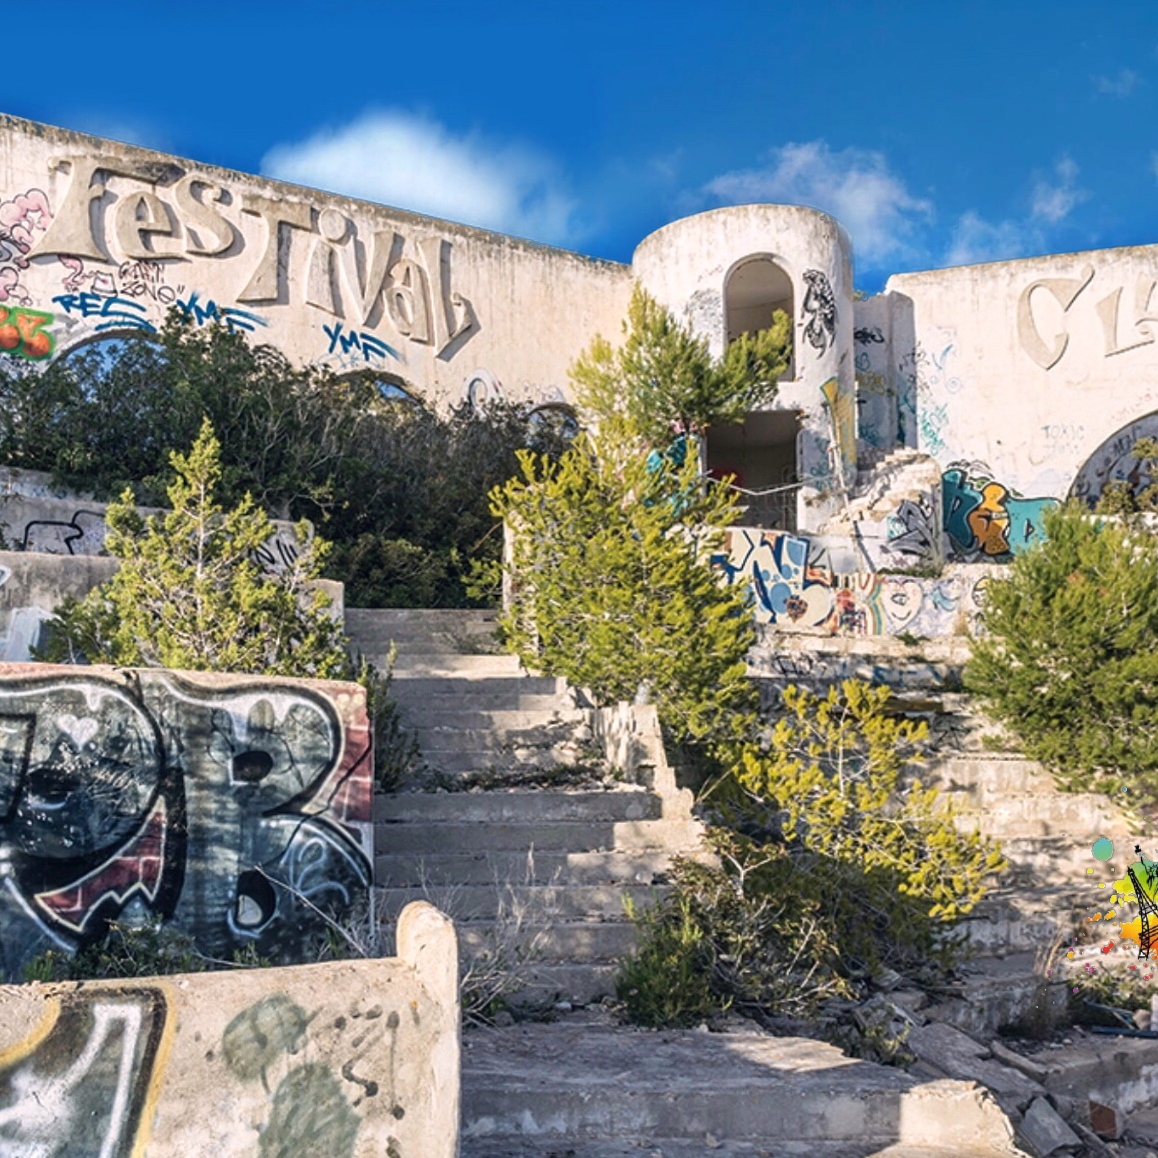 Historia del club de fiestas abandonado de Ibiza